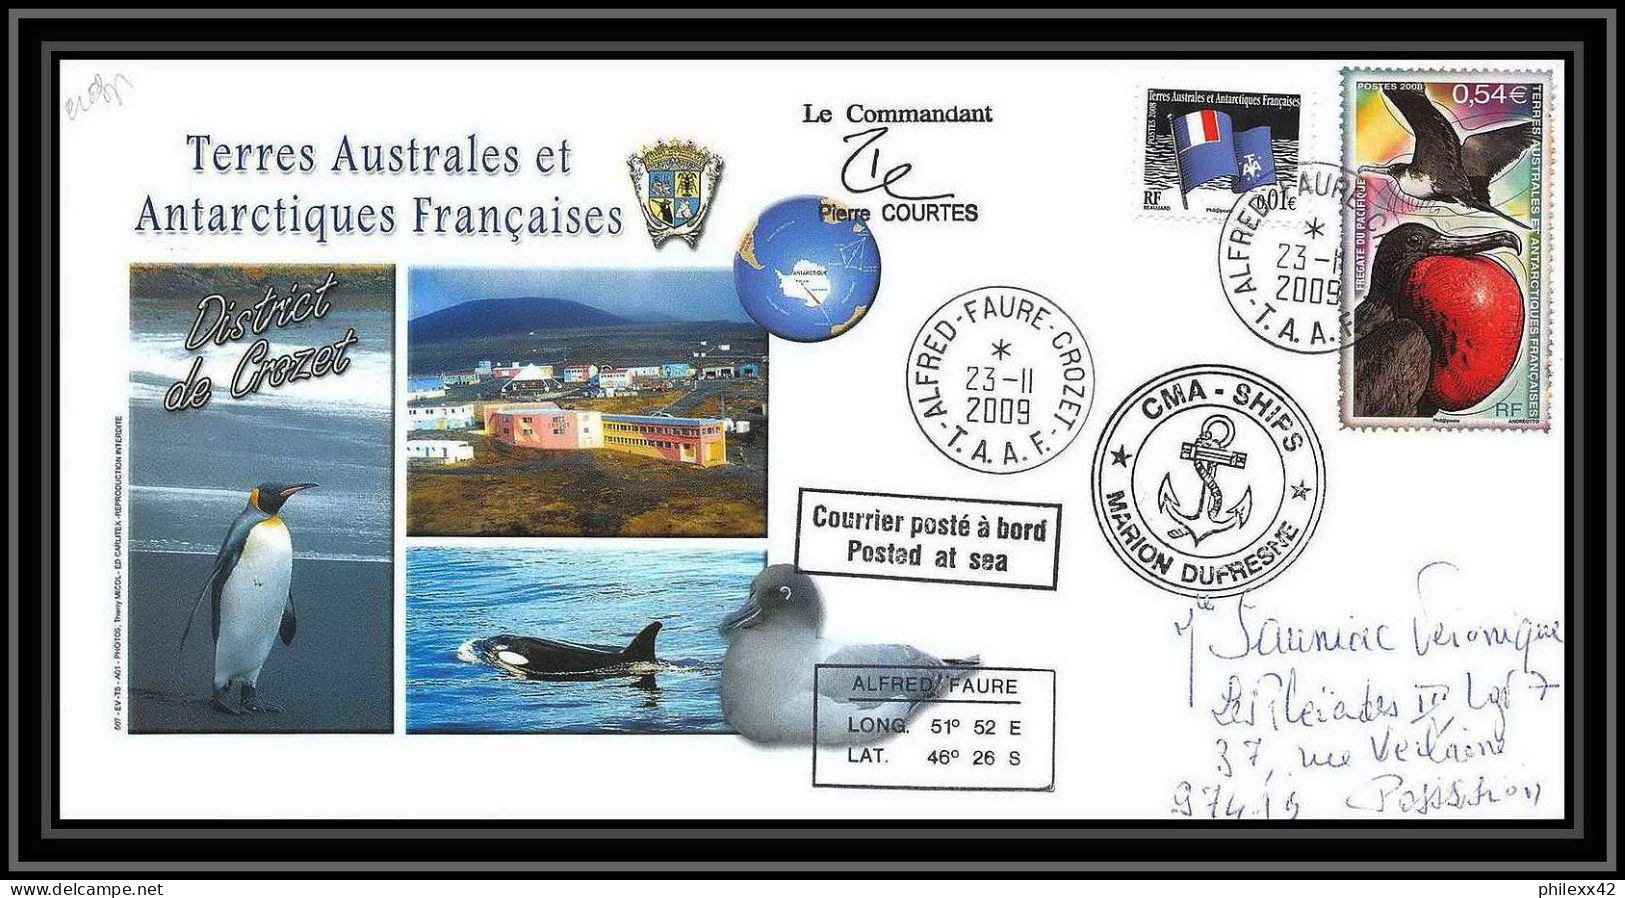 2951 ANTARCTIC Terres Australes TAAF Lettre Dufresne Signé Signed CROZET Portes Ouvertes 23/11/2009 N°517 - Expéditions Antarctiques